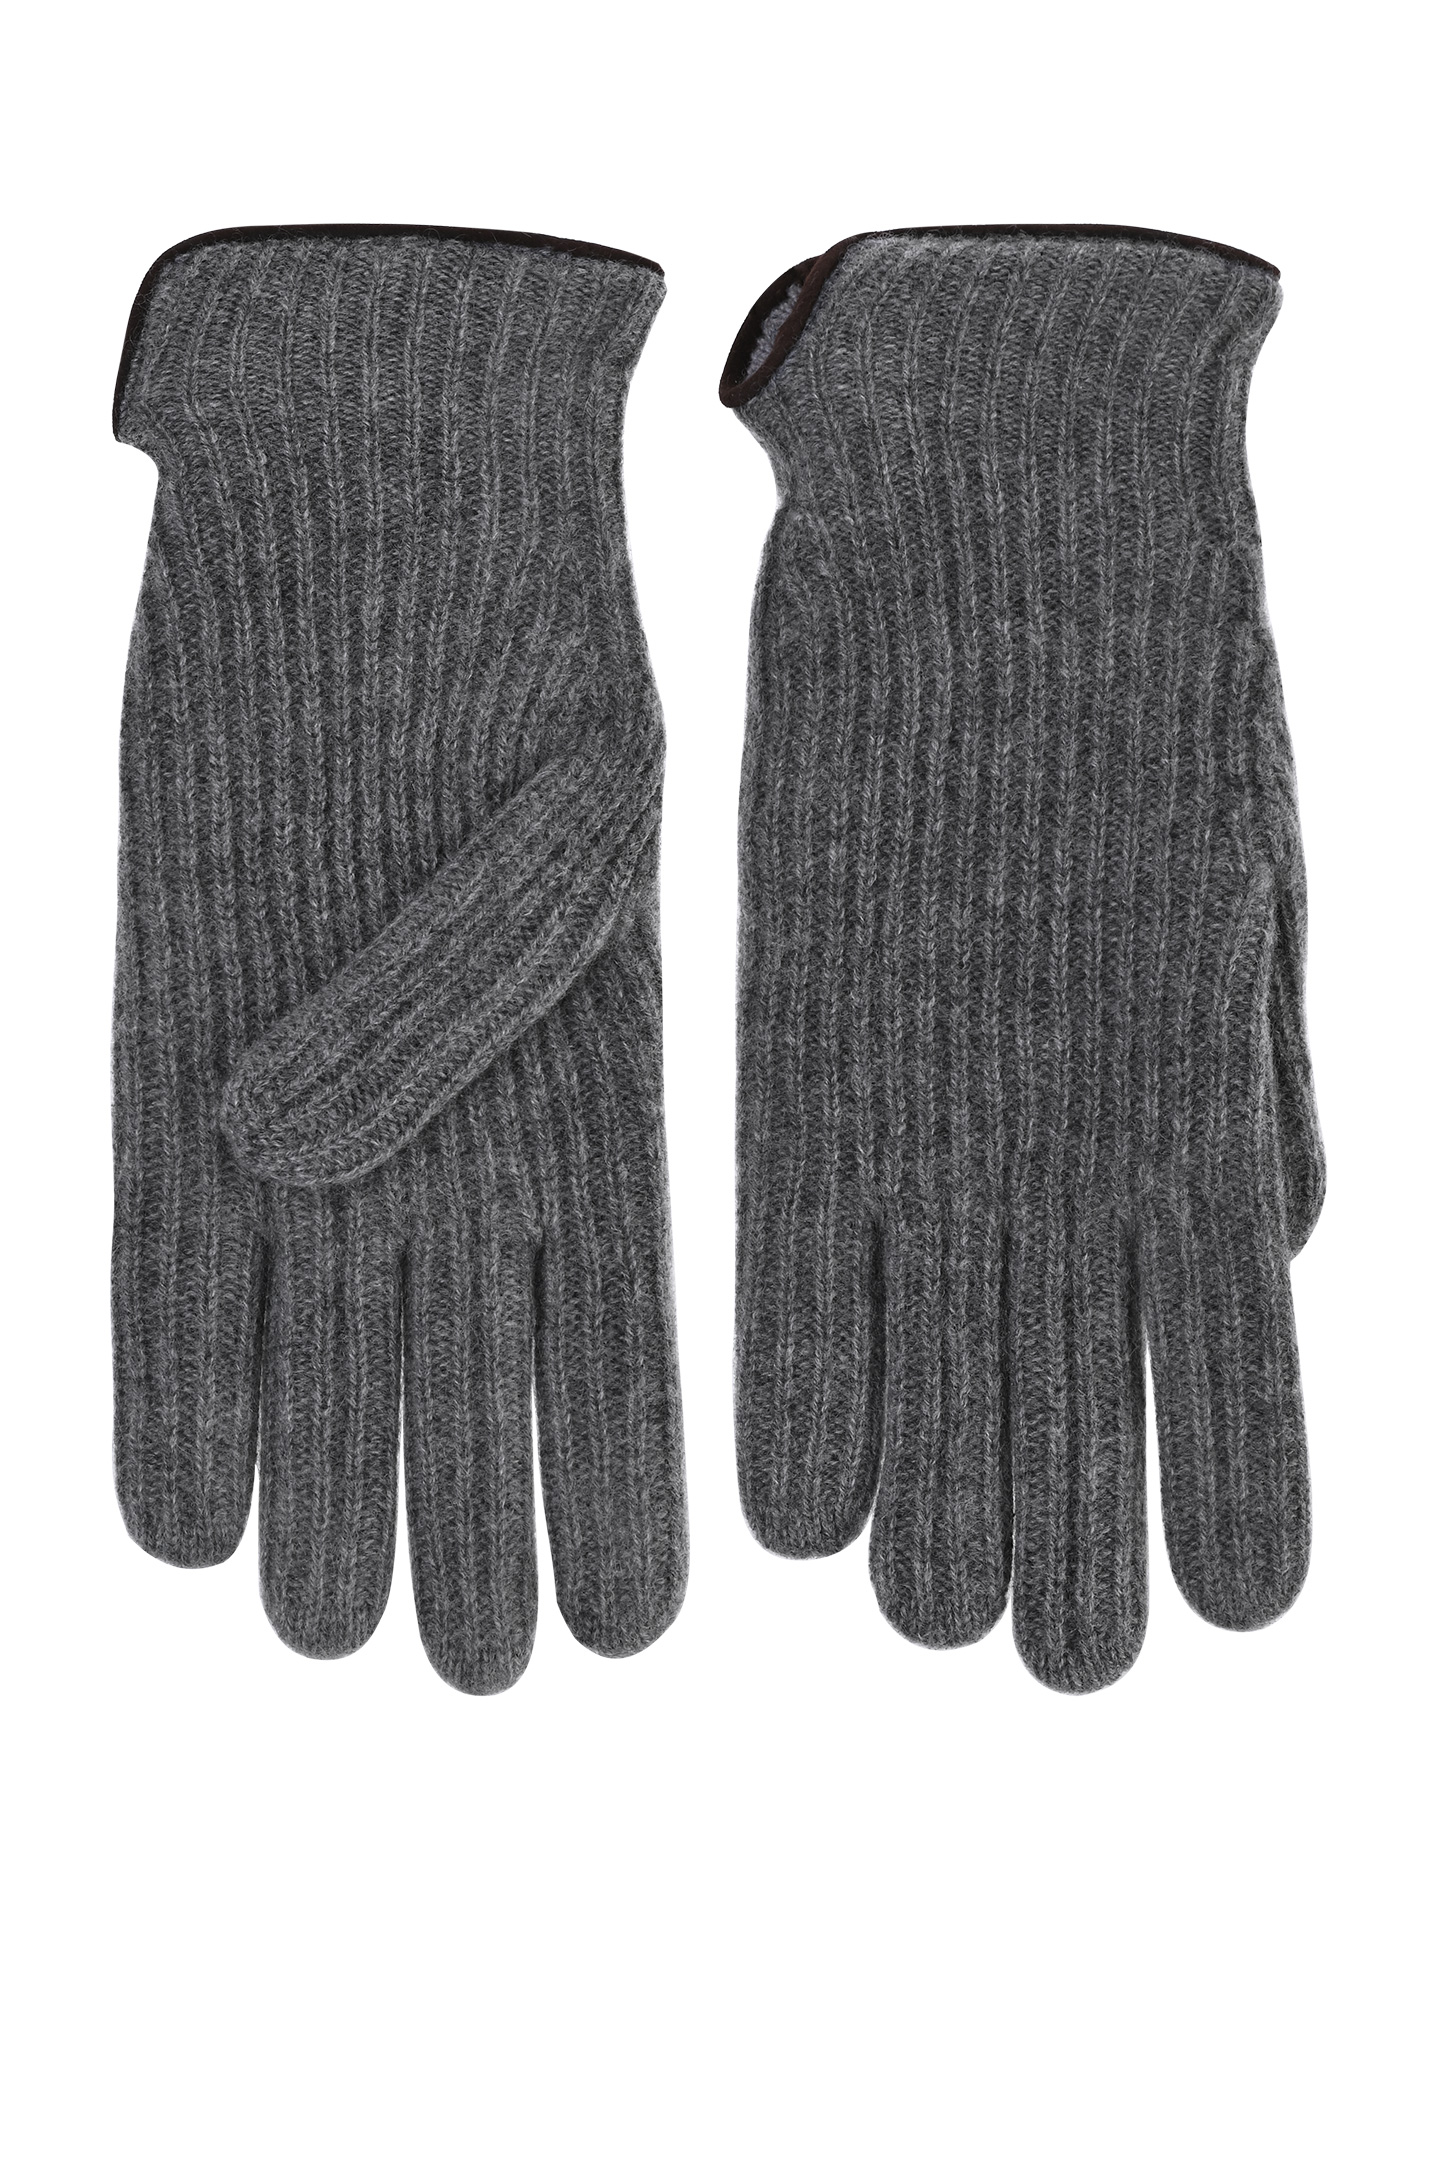 Перчатки DORIANI CASHMERE GU-4, цвет: Серый, Мужской